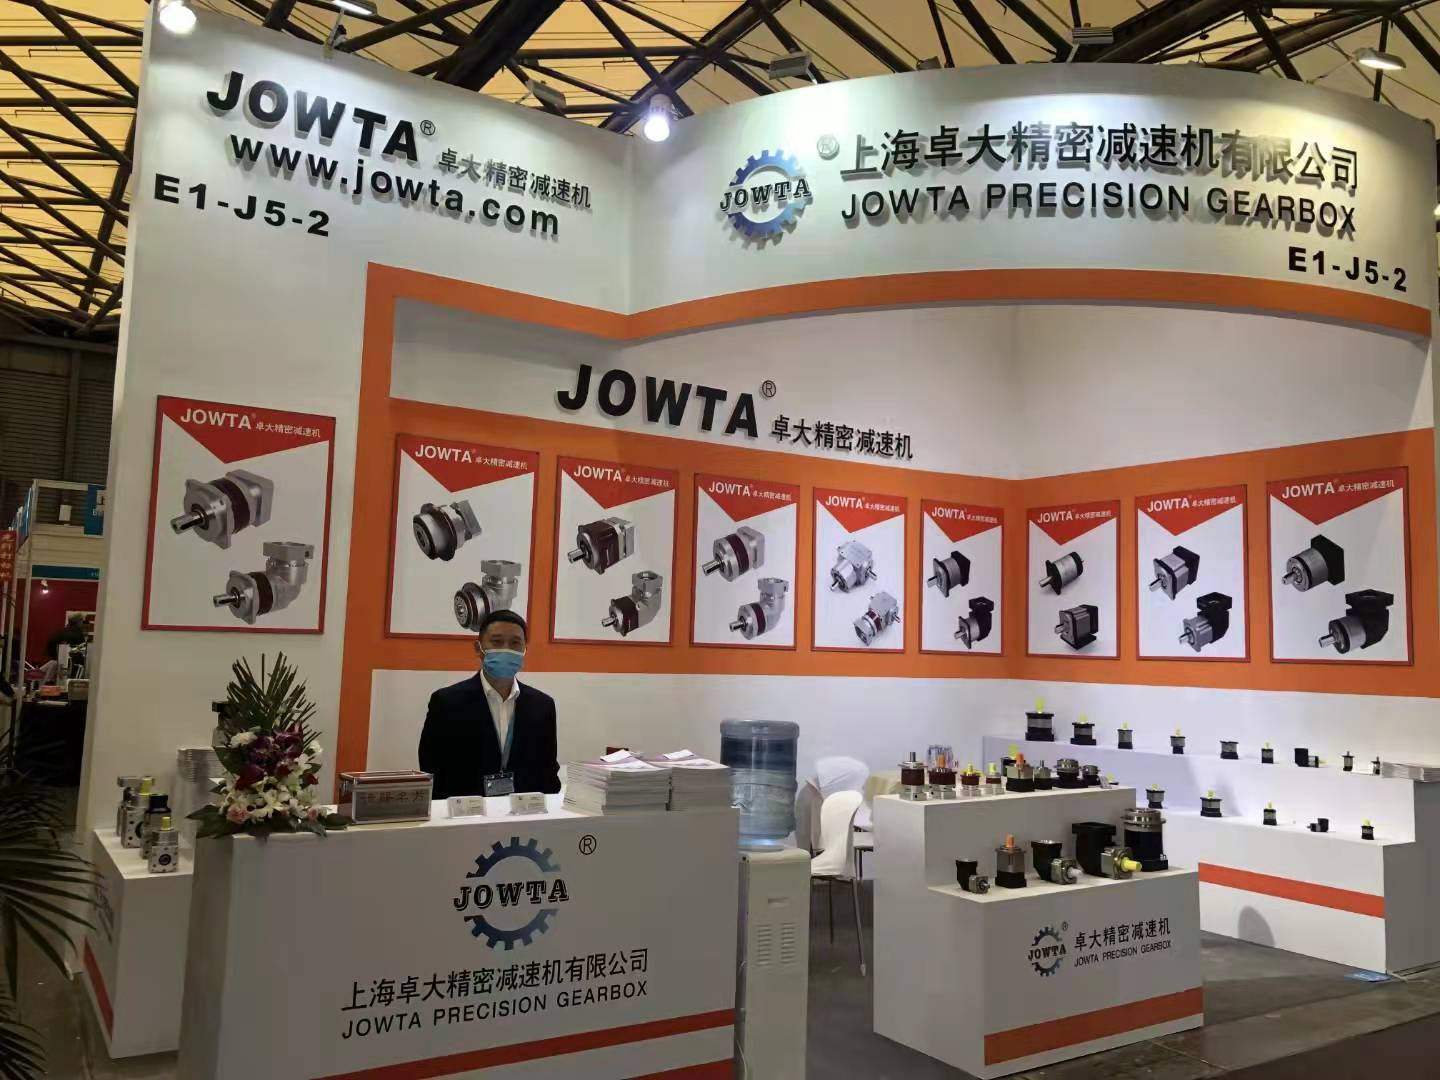 JOWTA® 2015 Exhibition Information